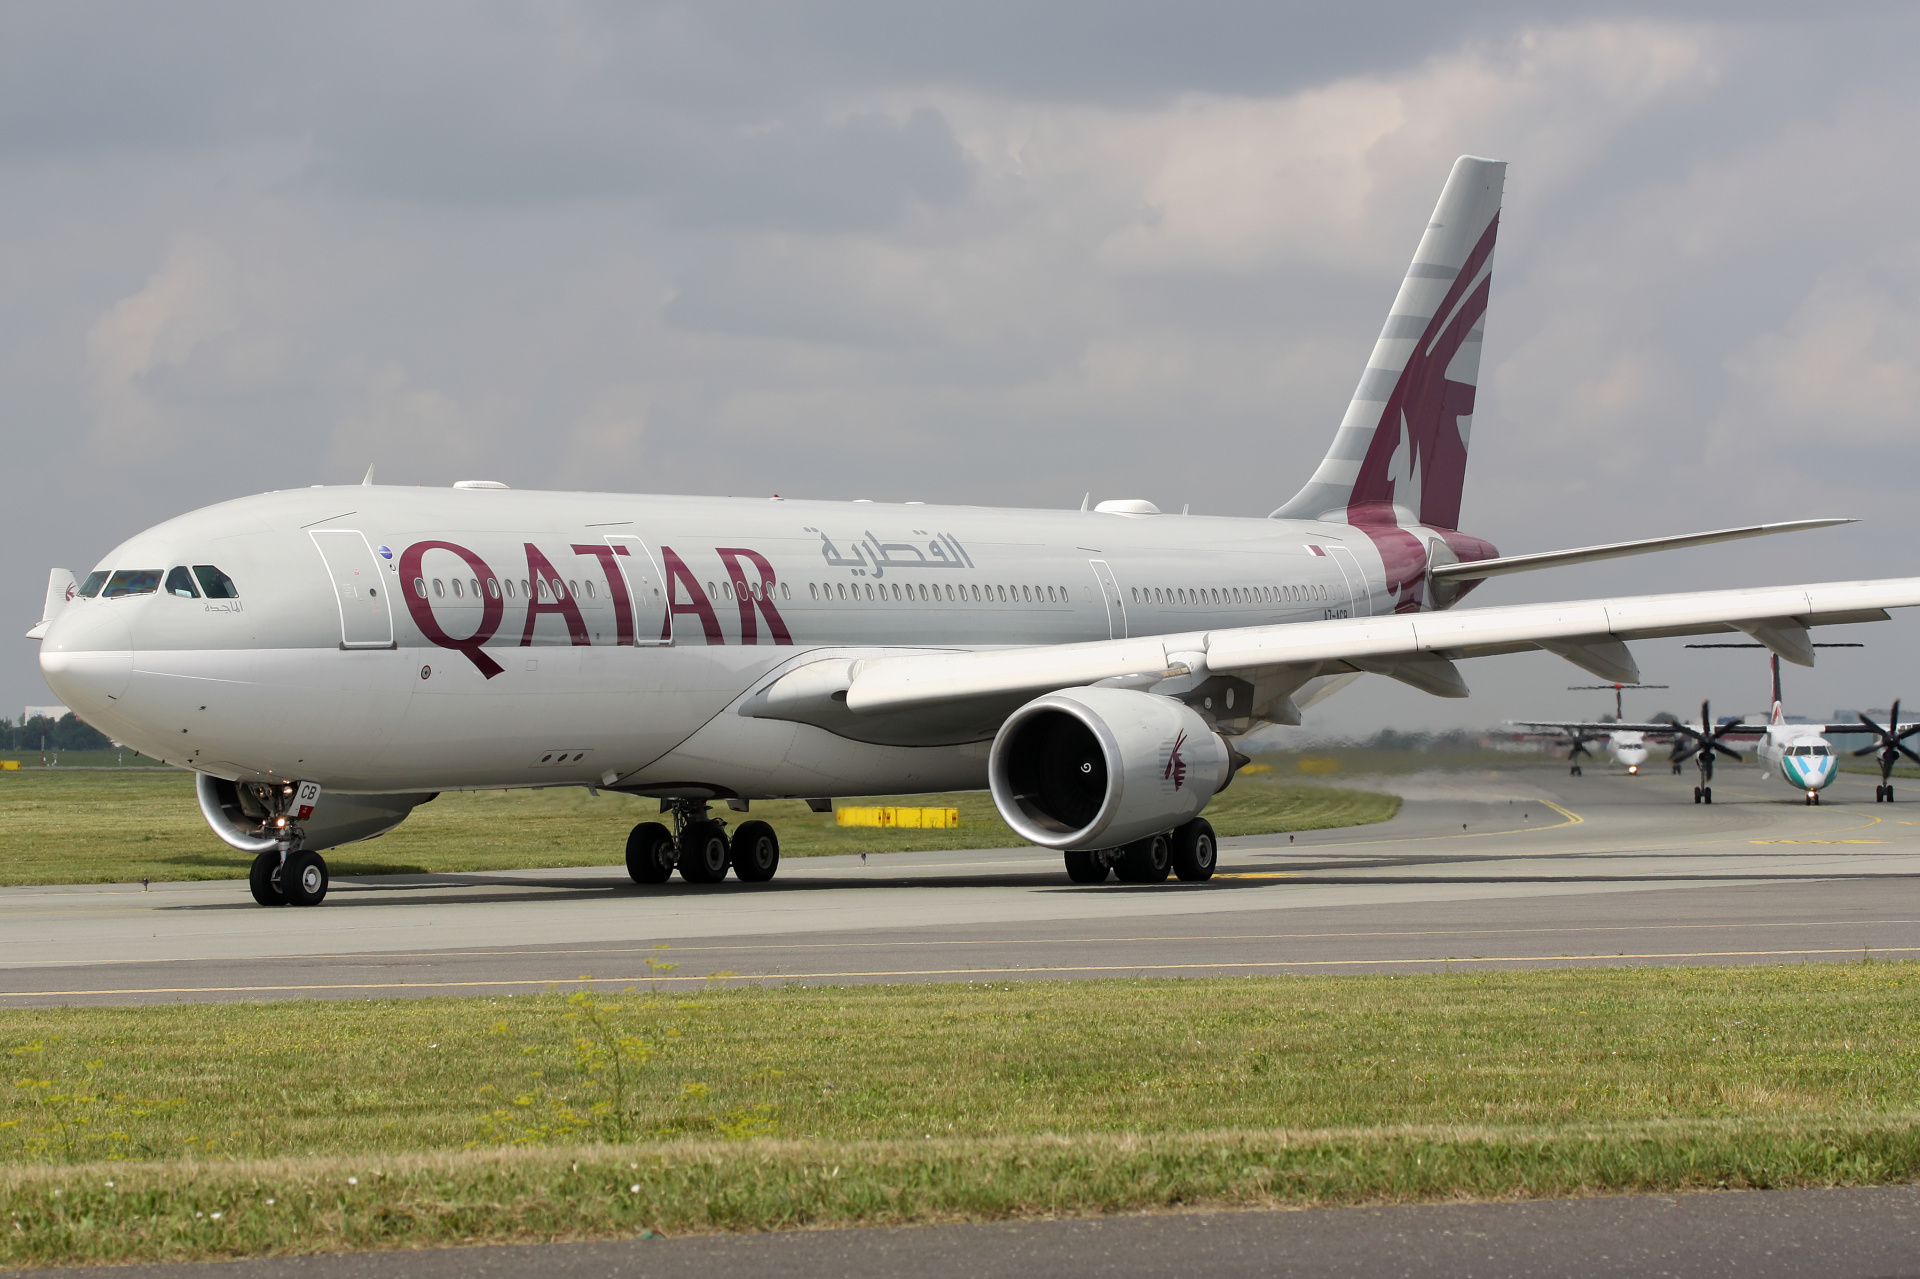 A7-ACB (Aircraft » EPWA Spotting » Airbus A330-200 » Qatar Airways)